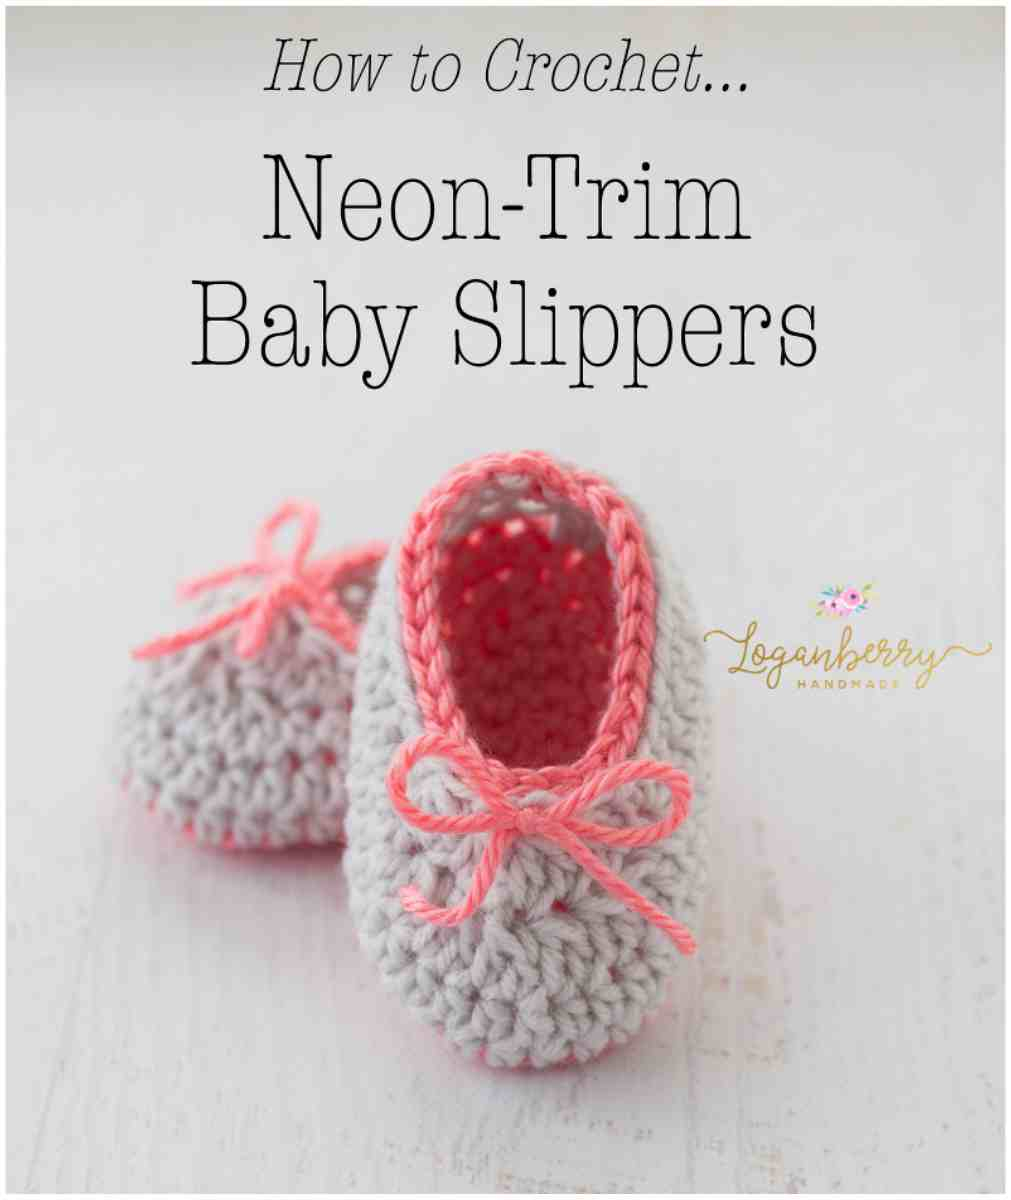 Crochet Slipper Boots Free Pattern Ba Crochet Slippers Neon Trim Free Pattern Your Crochet